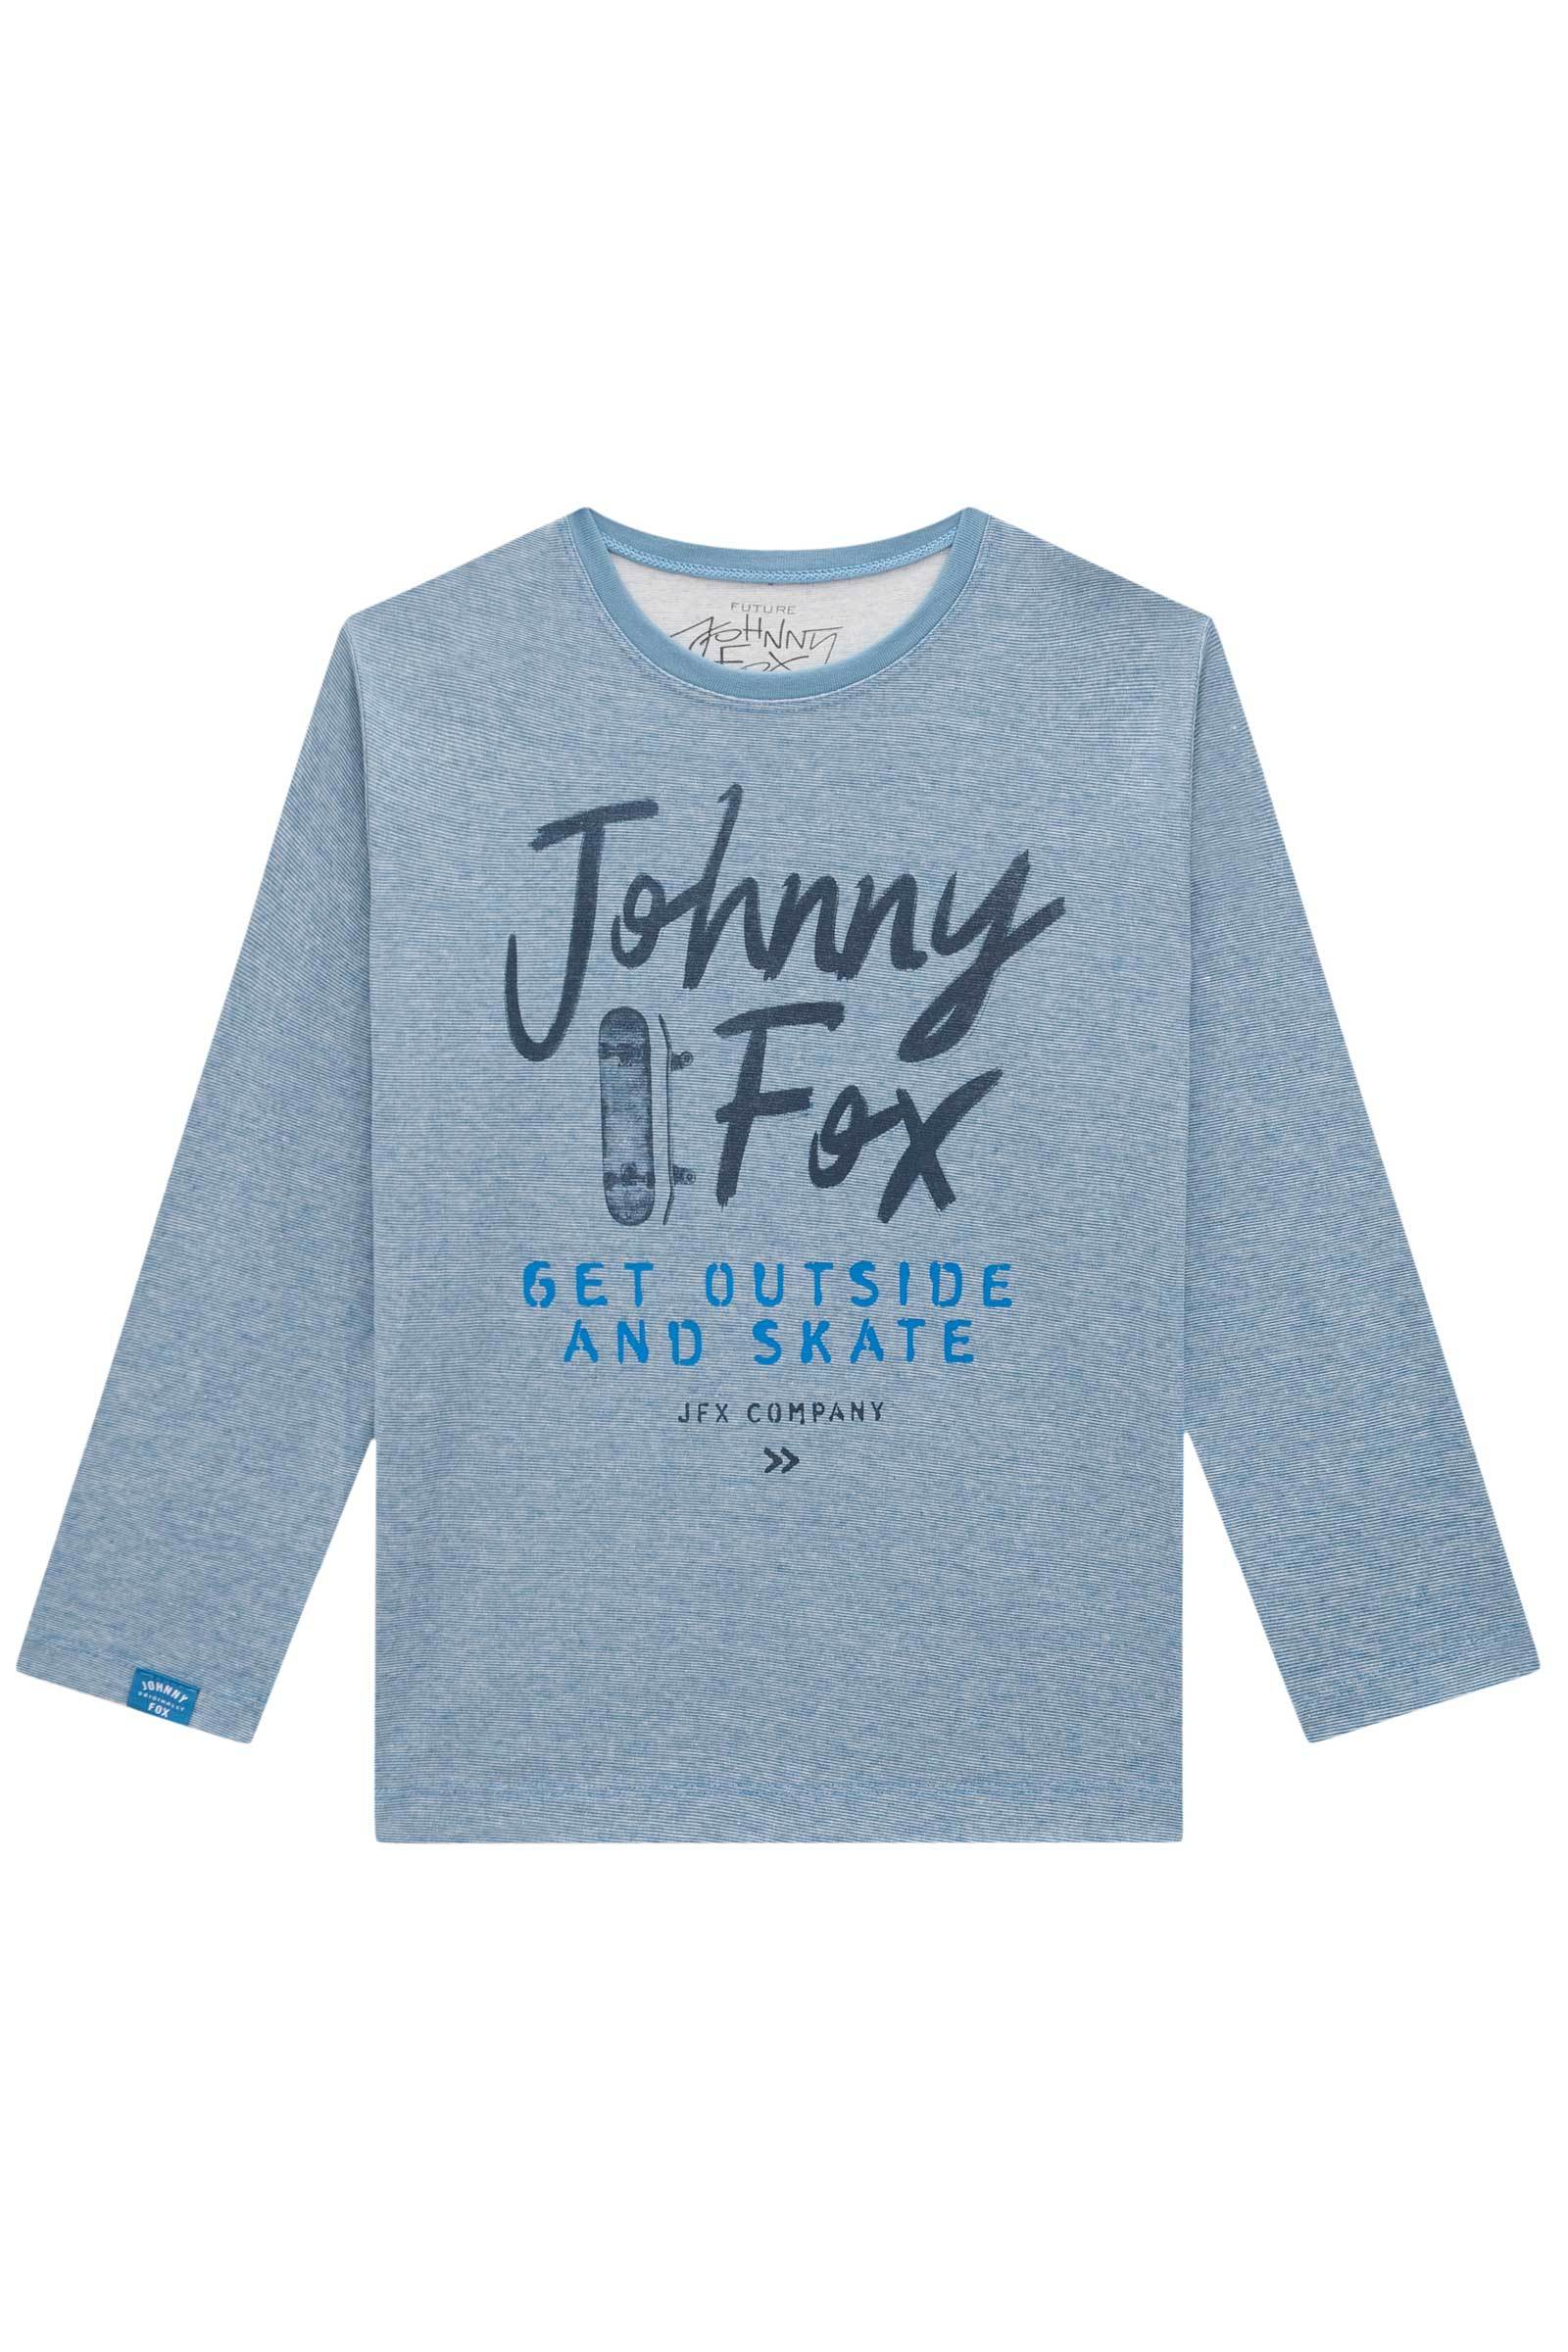 Camiseta em Malha Diferenciada Canadá 71518 Johnny Fox